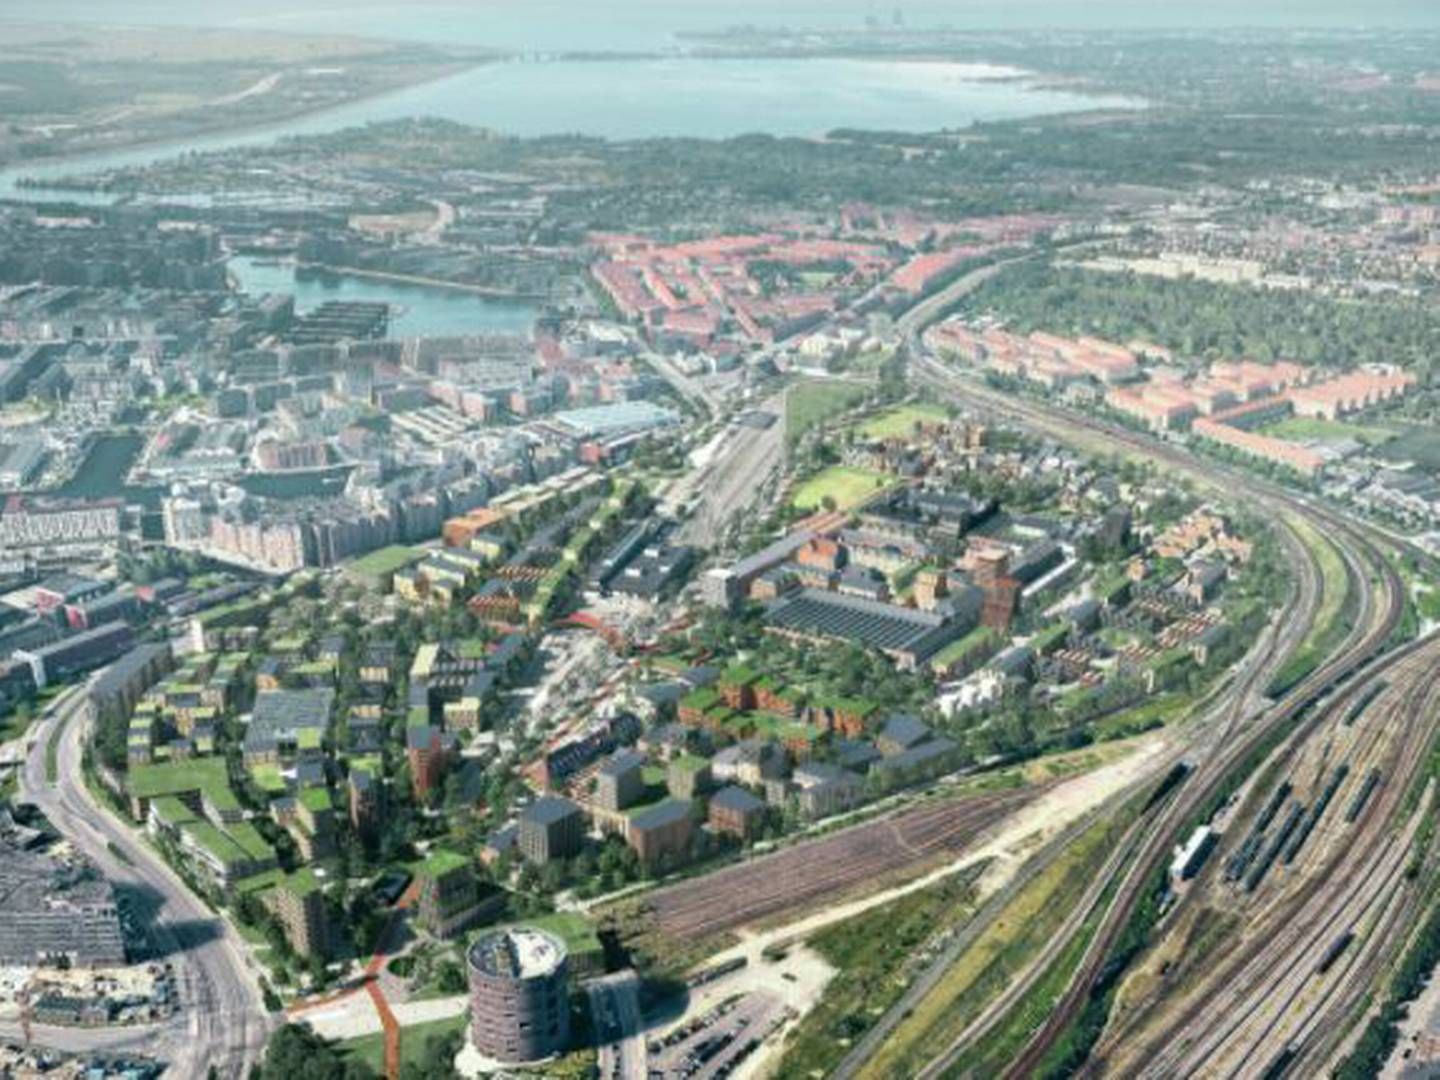 Et hold med arkitektfirmaet Cobe i spidsen vandt i april 2021 konkurrencen om at udvikle en helhedsplan for Jernbanebyen i København. | Foto: PR-visualisering / Cobe